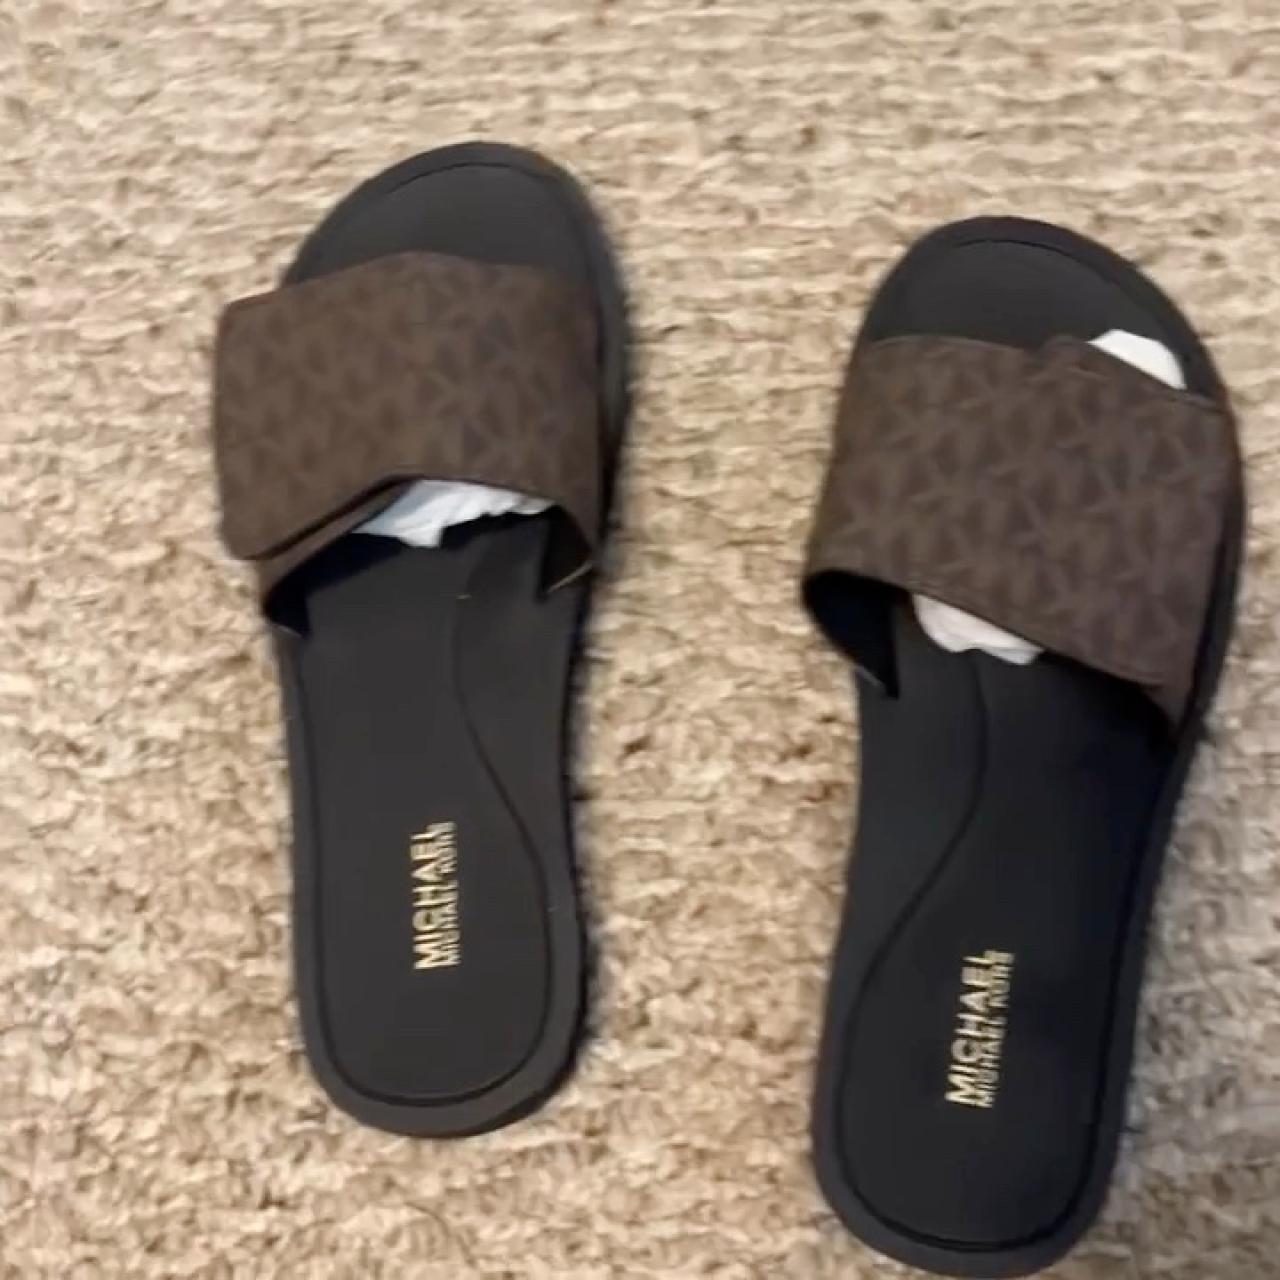 Michael Kors Monogram Velcro Sandals Never worn too... - Depop